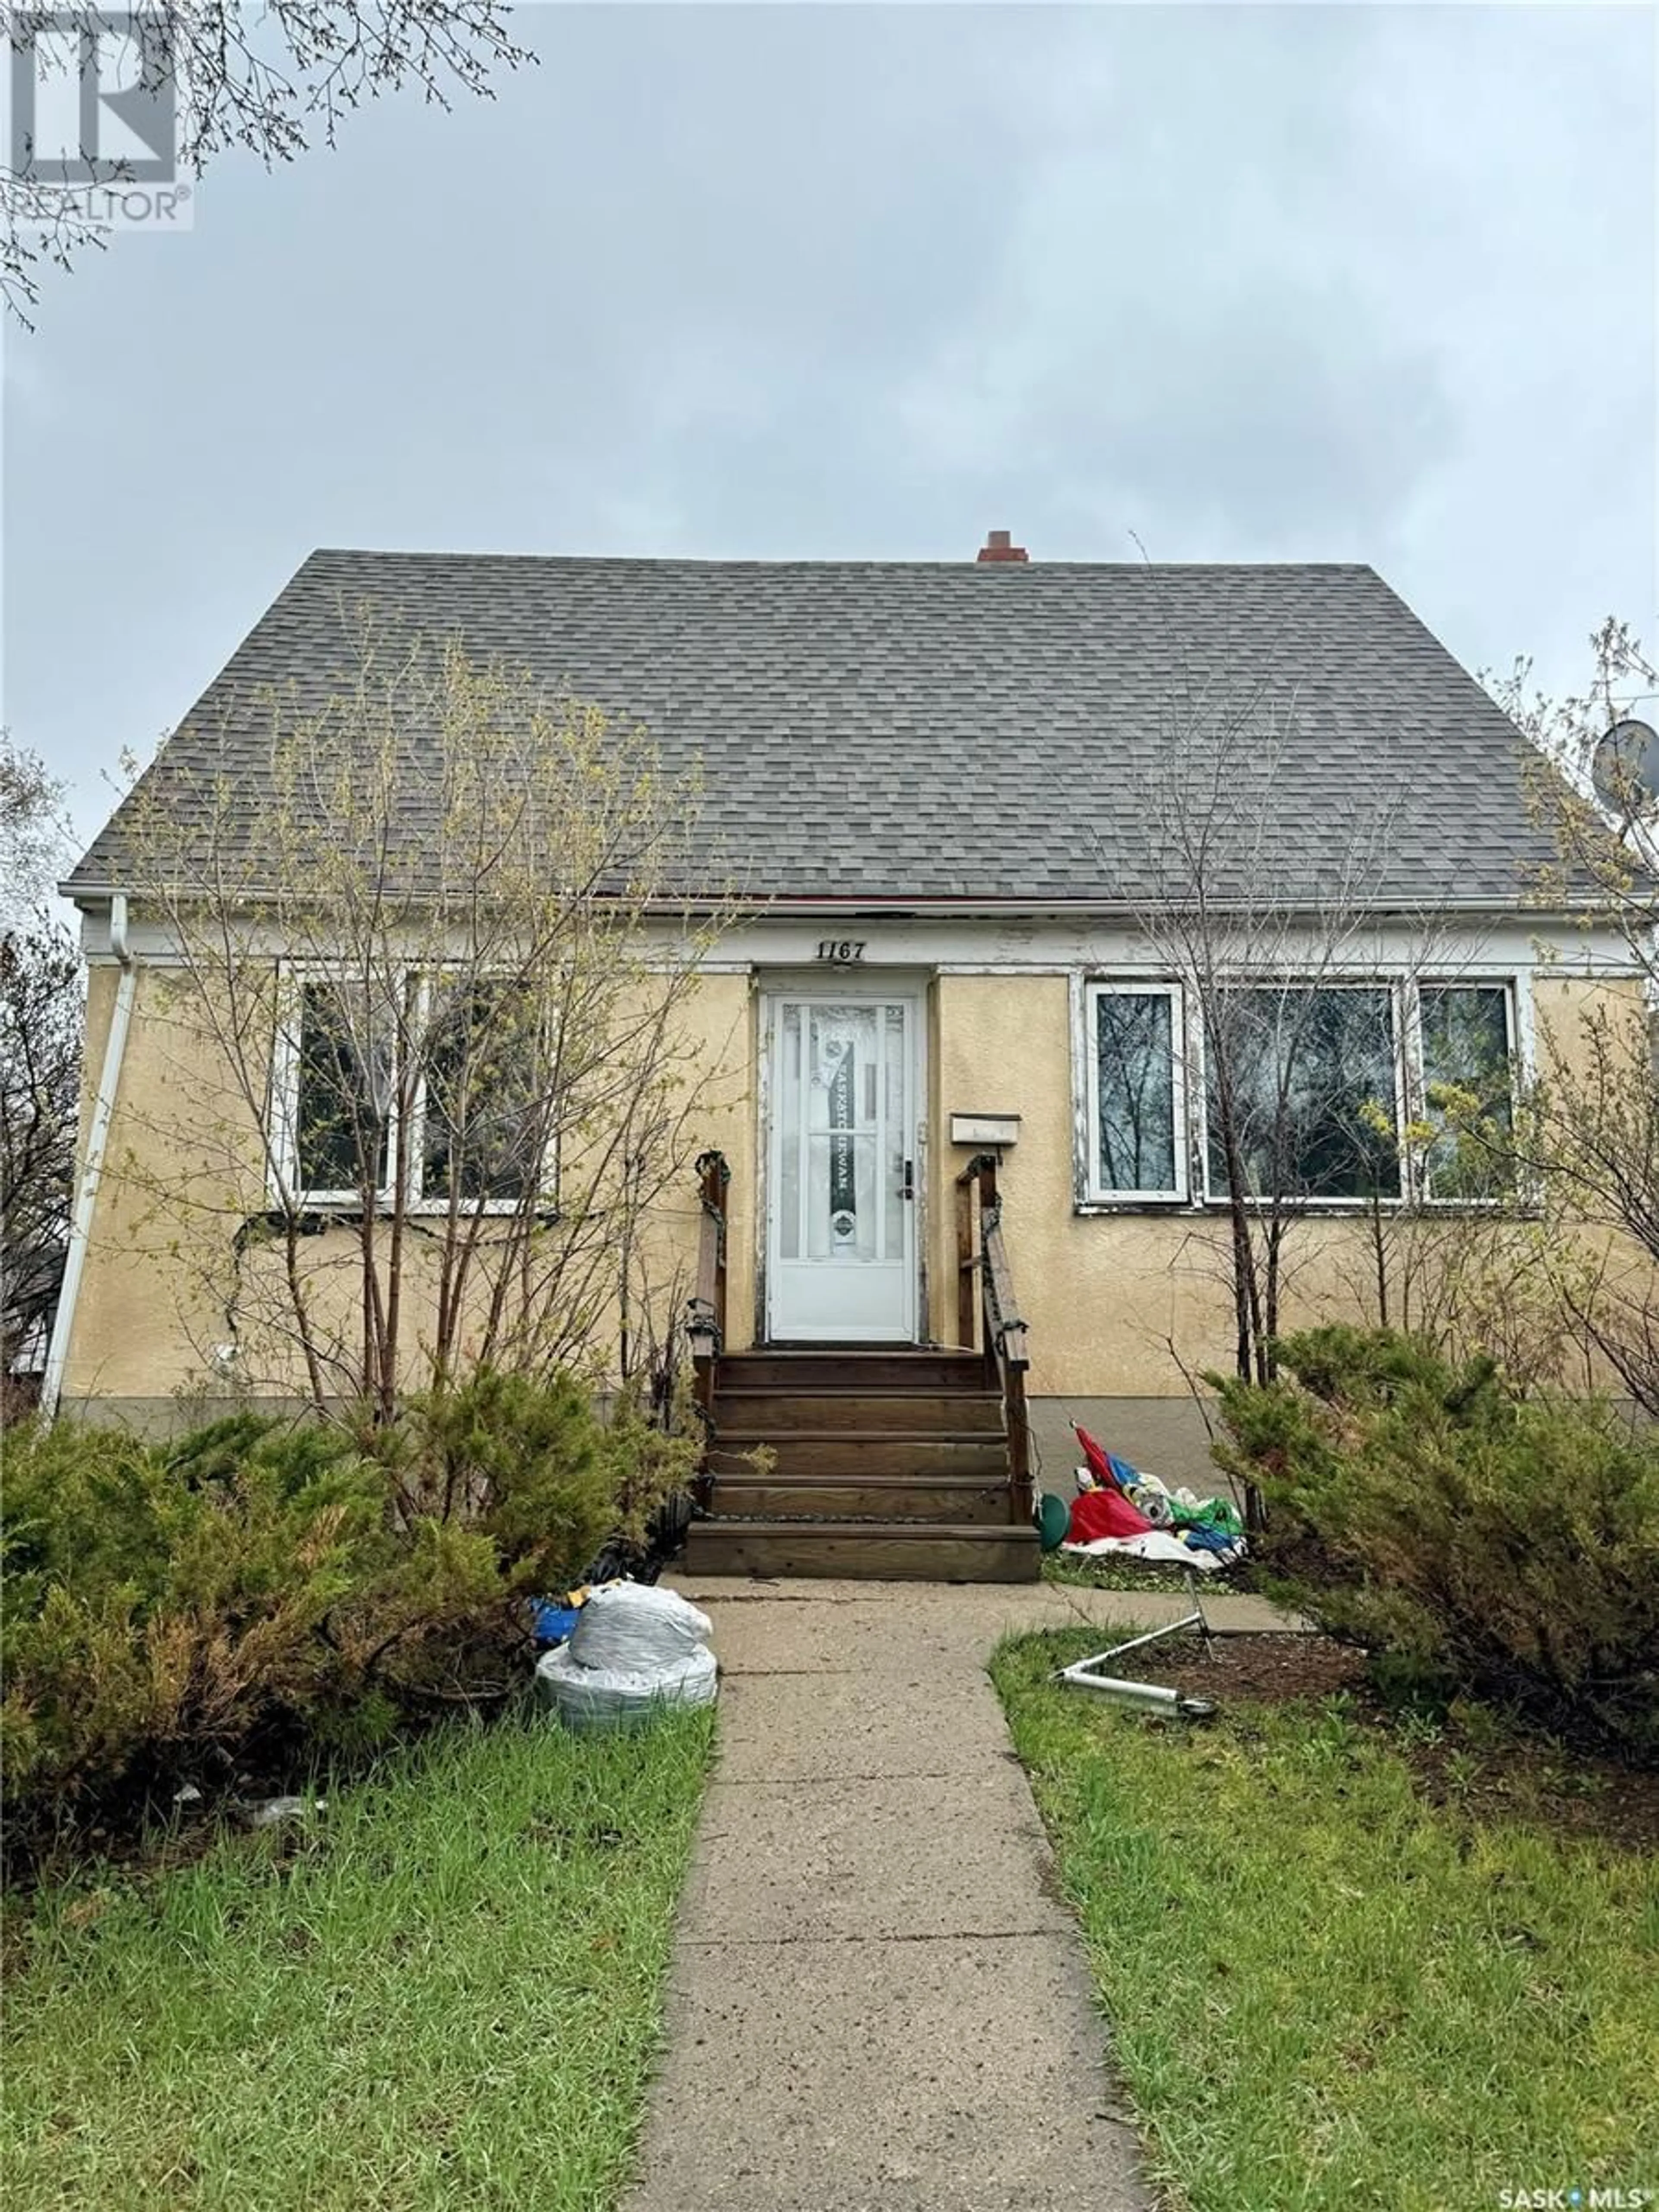 Frontside or backside of a home for 1167 Elphinstone STREET, Regina Saskatchewan S4T3M2